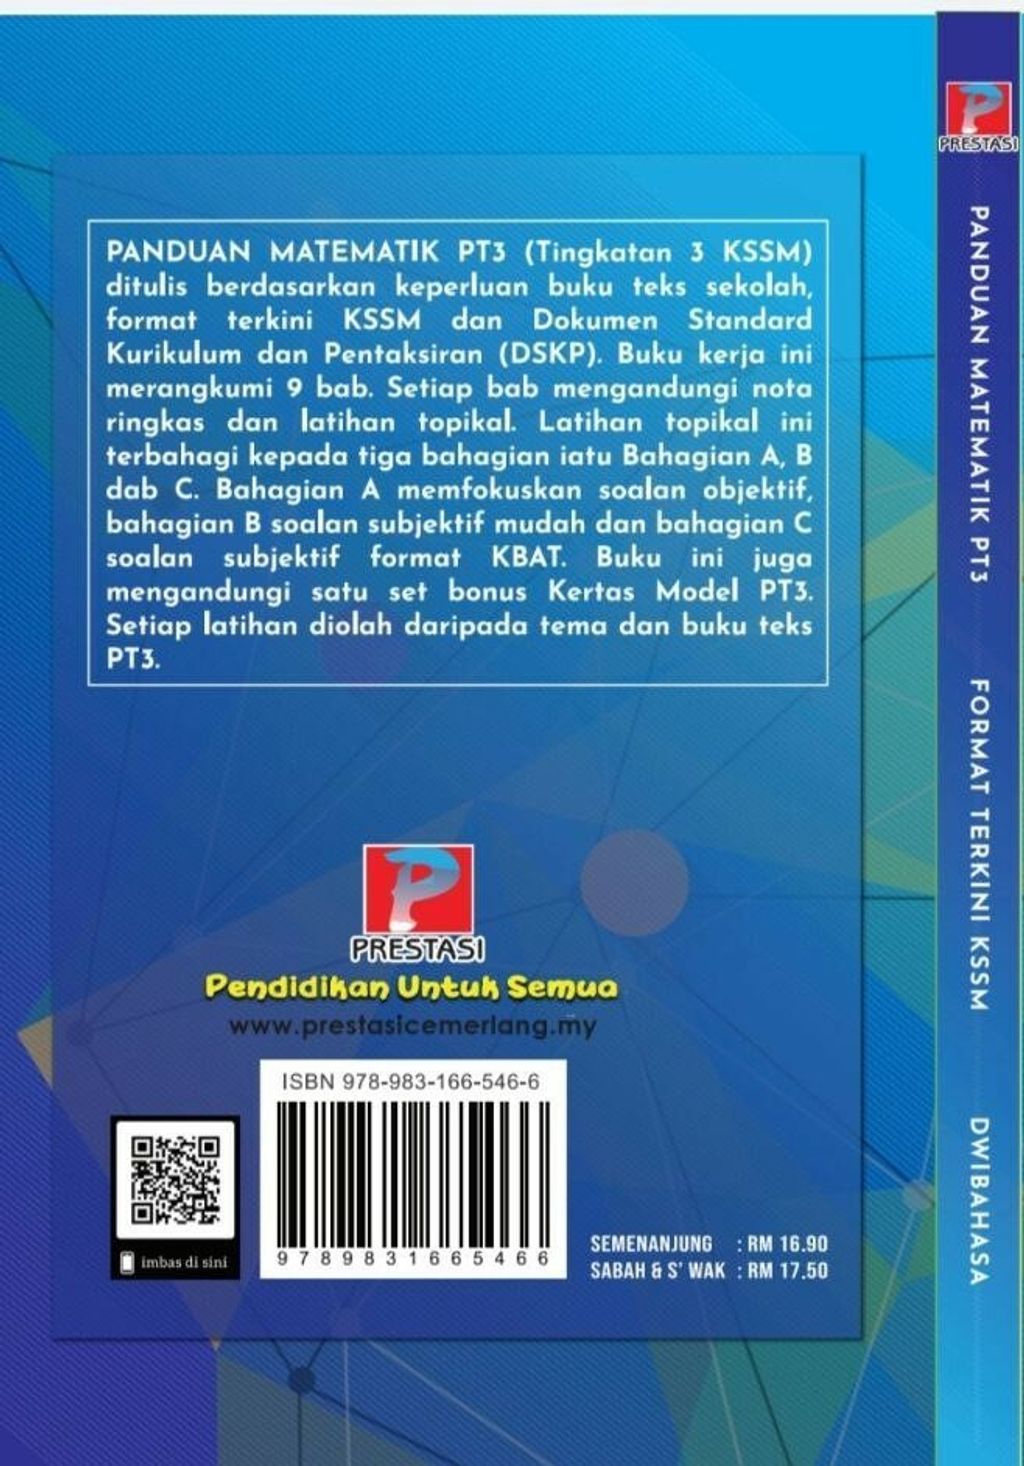 Panduan Matematik Pt3 back cover.jpg